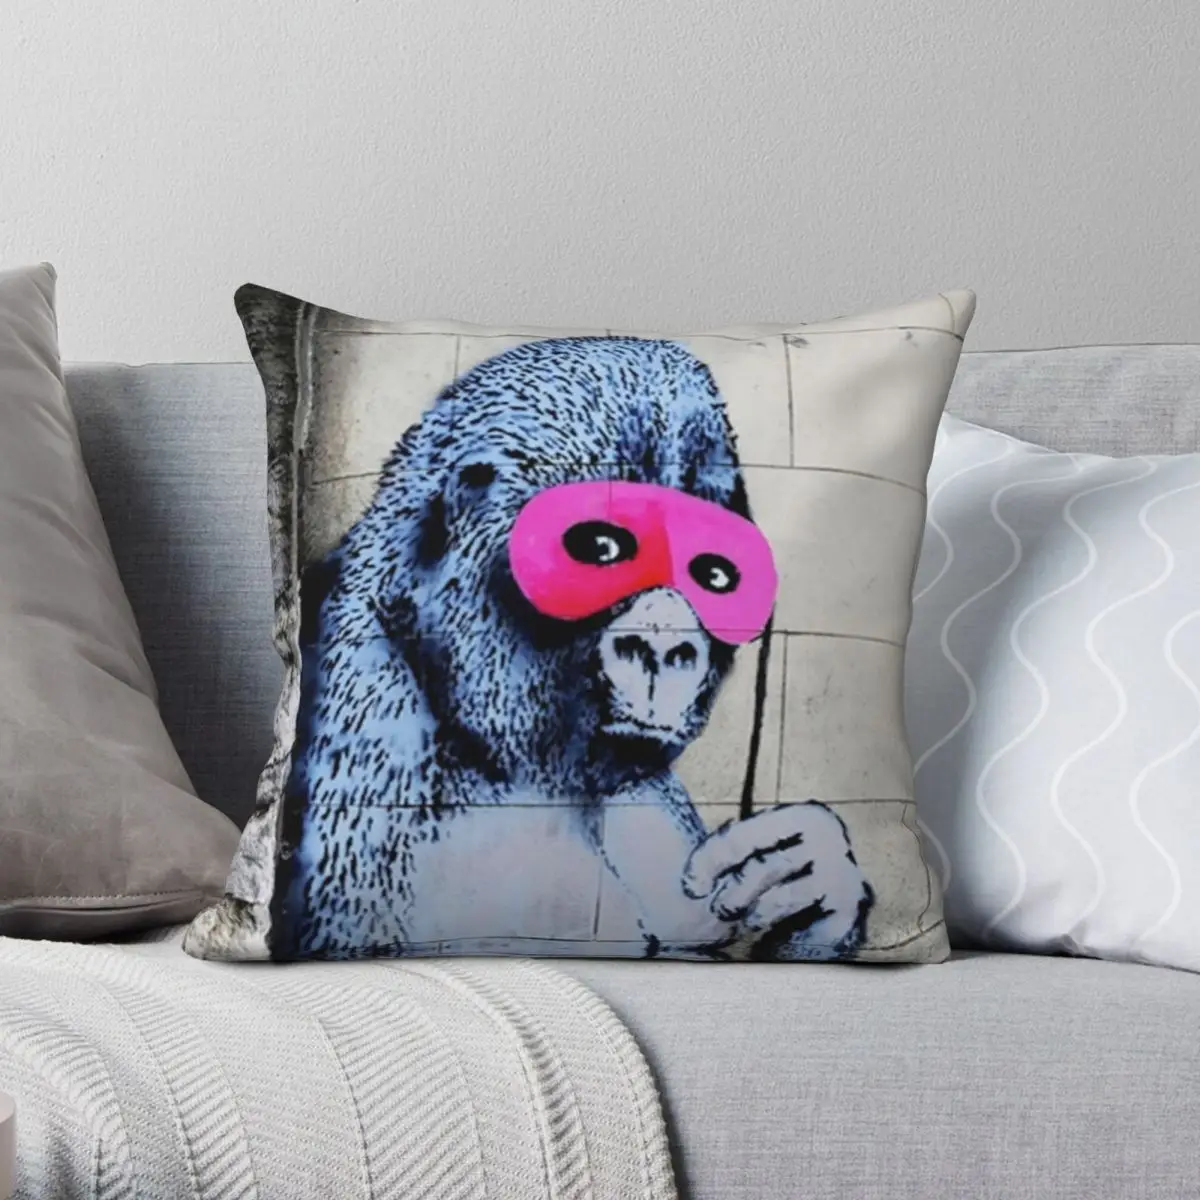 

Pink Gorilla Mask Banksy Pillowcase Polyester Linen Velvet Creative Zip Decor Throw Pillow Case Room Cushion Cover 18"